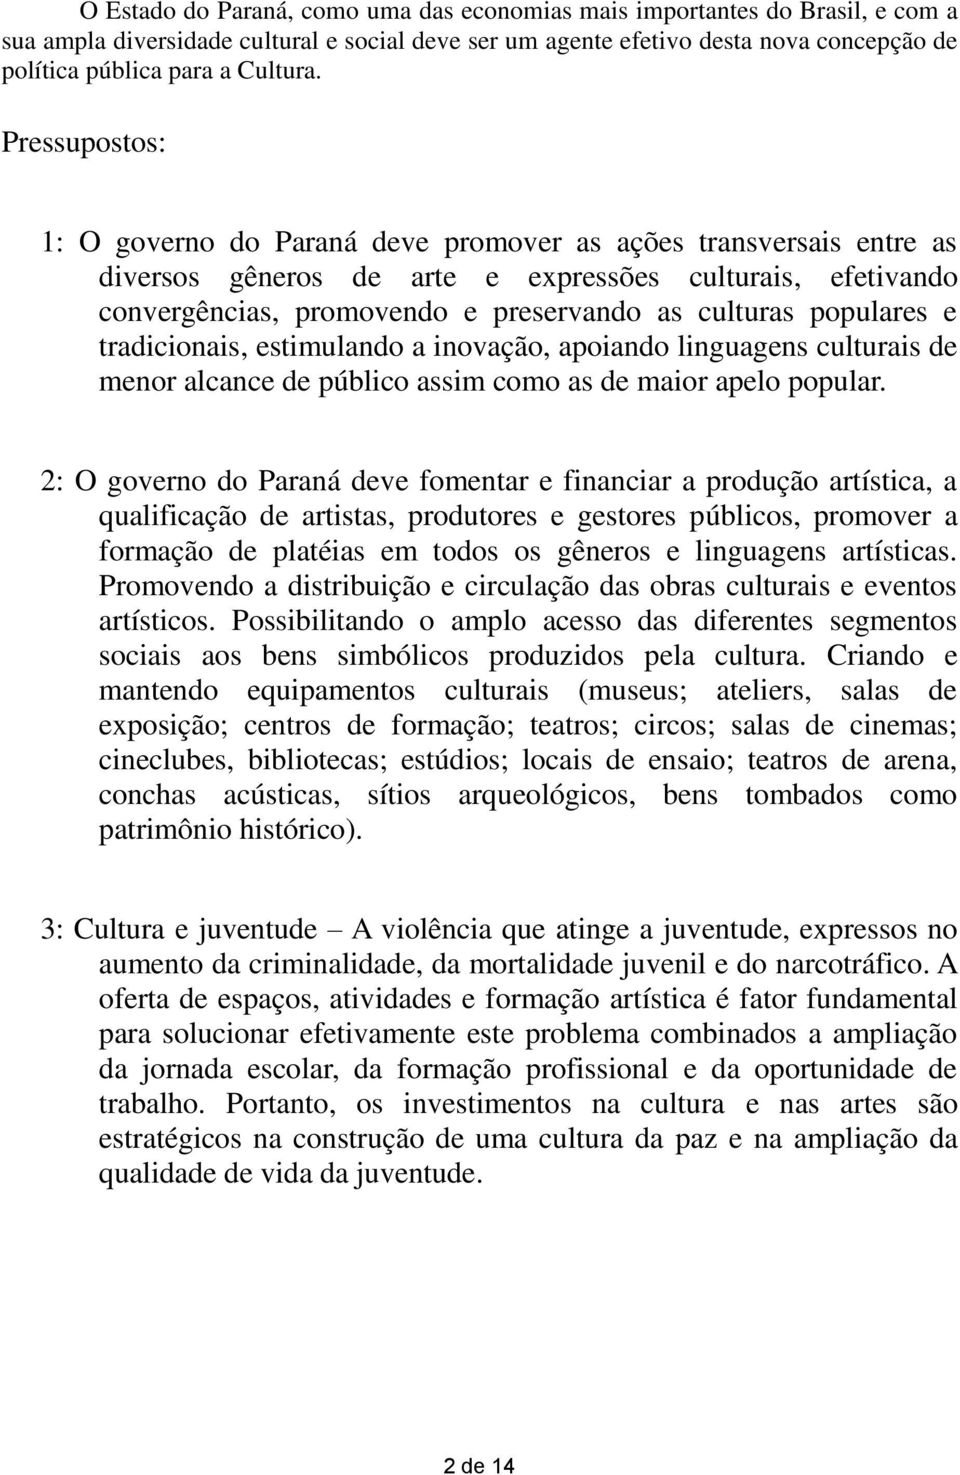 Pressupostos: 1: O governo do Paraná deve promover as ações transversais entre as diversos gêneros de arte e expressões culturais, efetivando convergências, promovendo e preservando as culturas